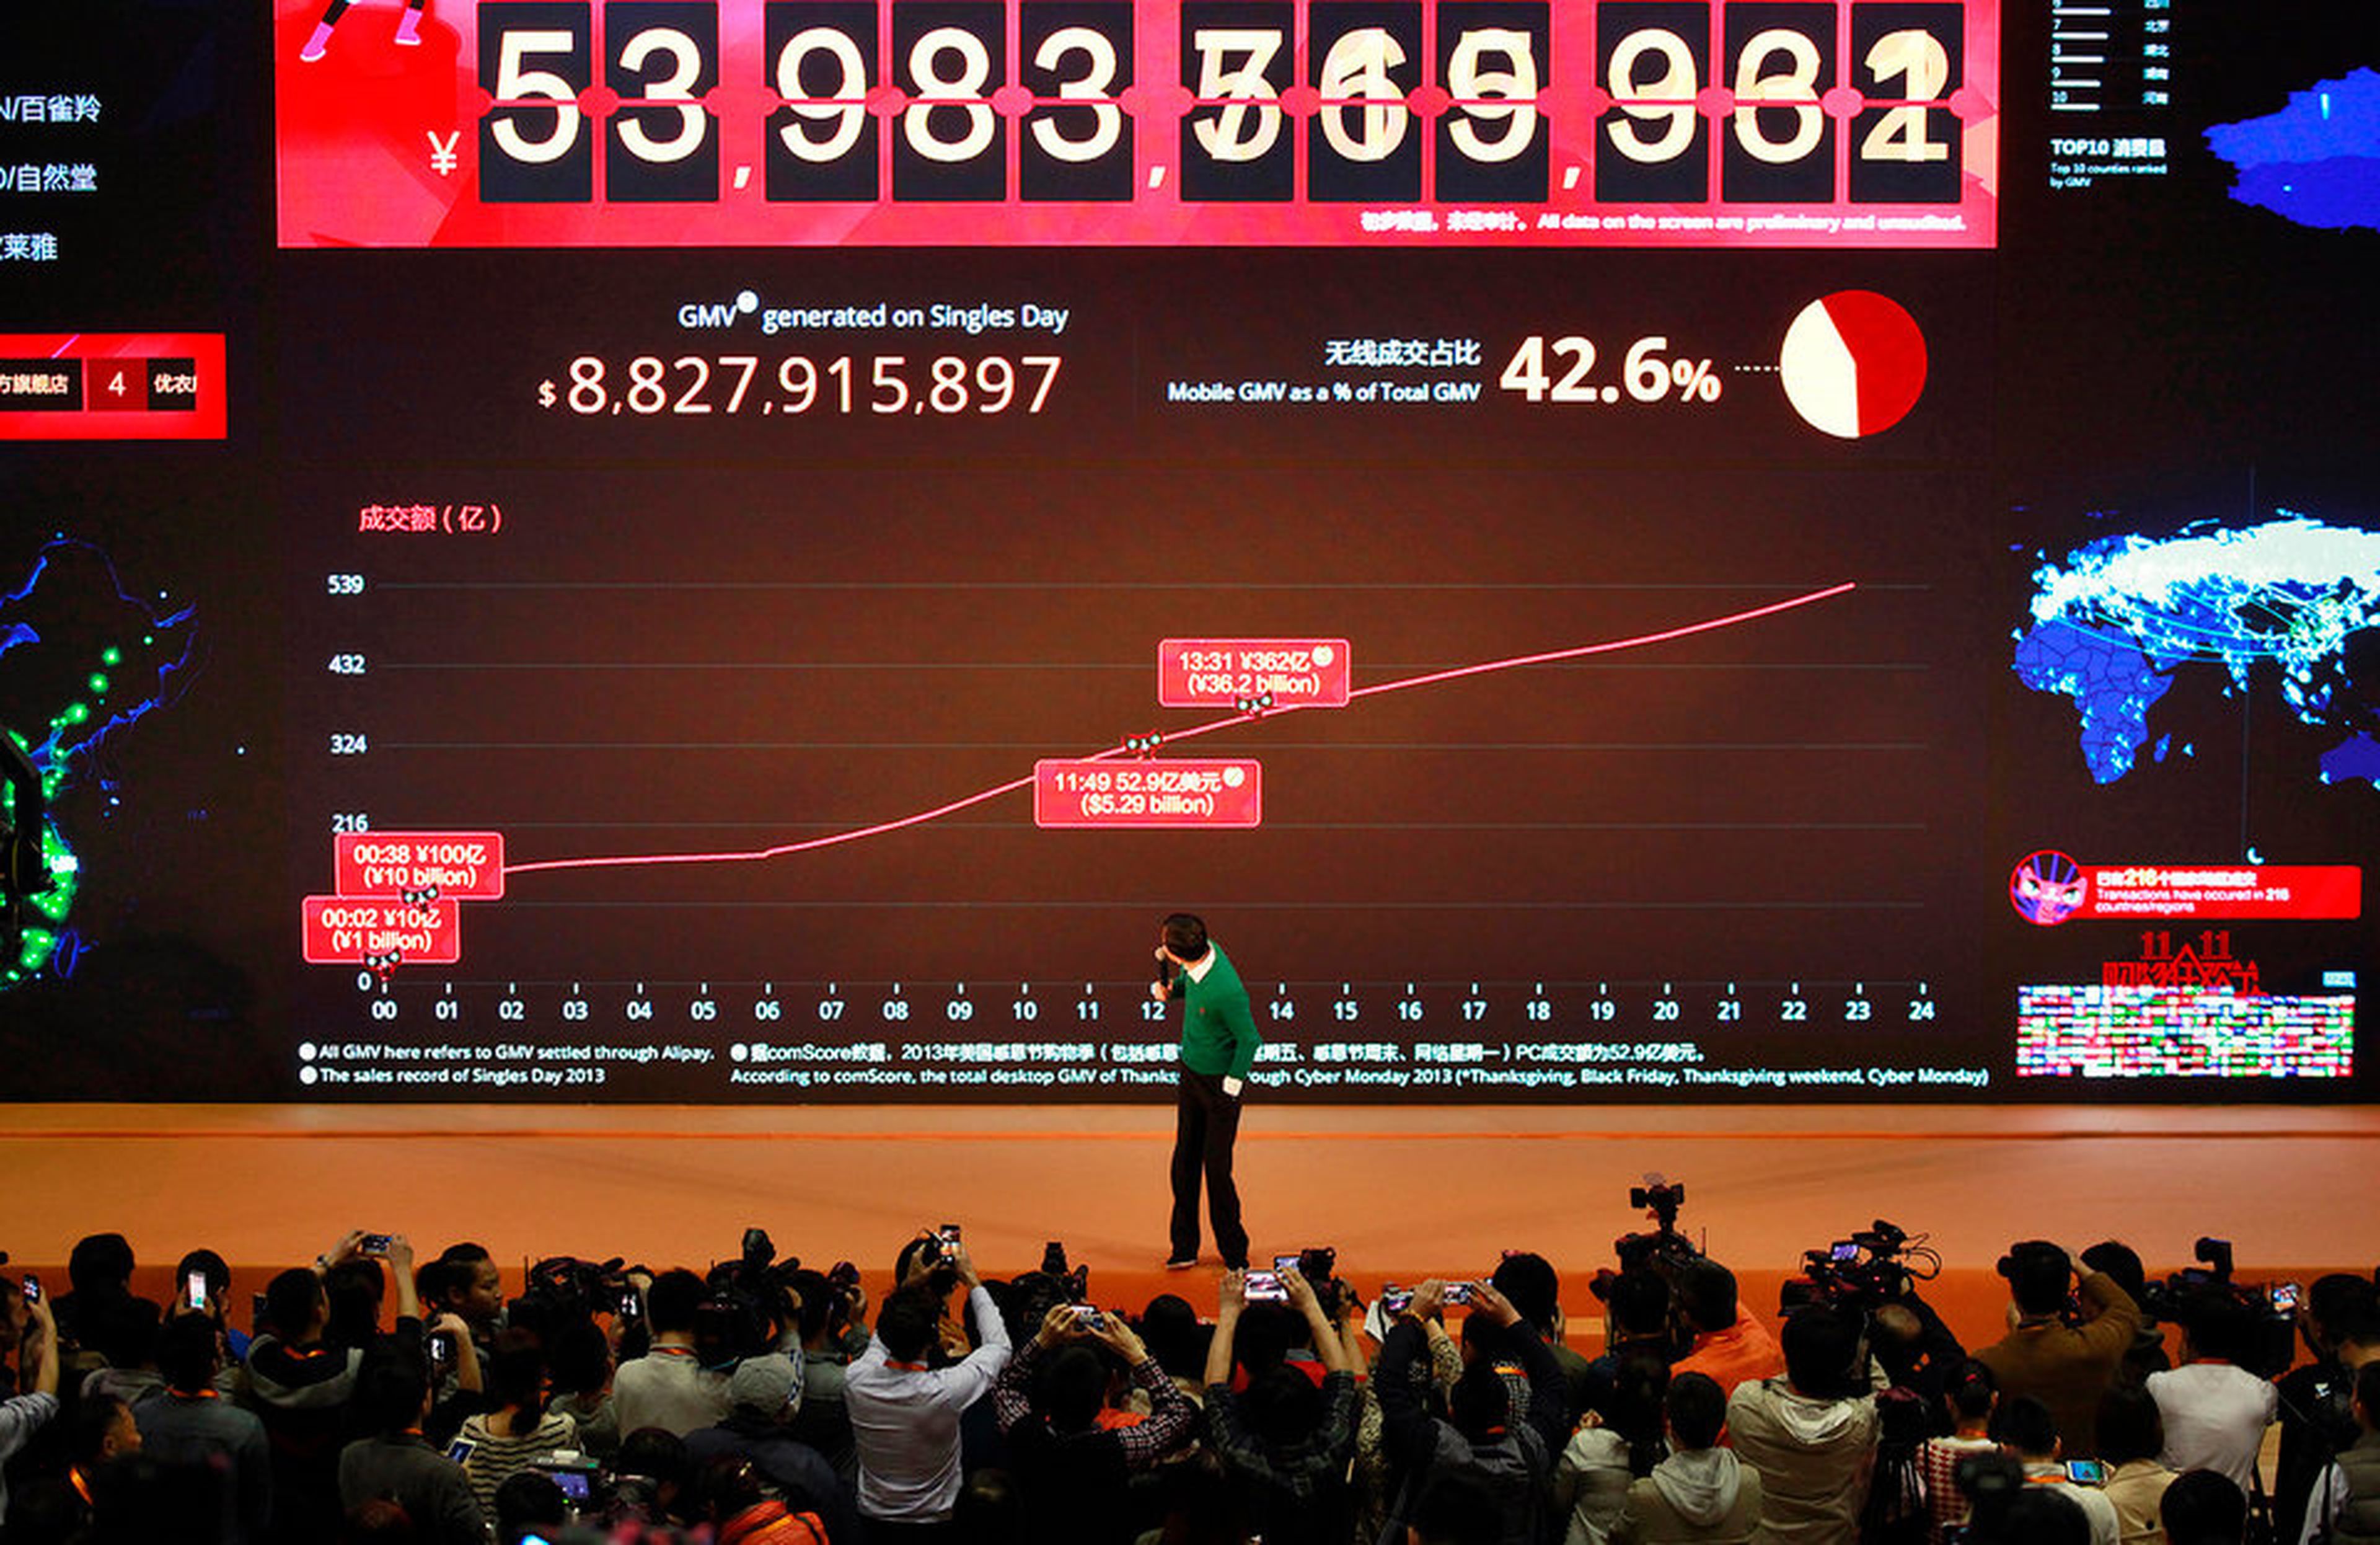 El presidente ejecutivo de Alibaba, Jack Ma, mira hacia la pantalla gigante que muestra el volumen de ventas en tiempo real durante el Día de los solteros.